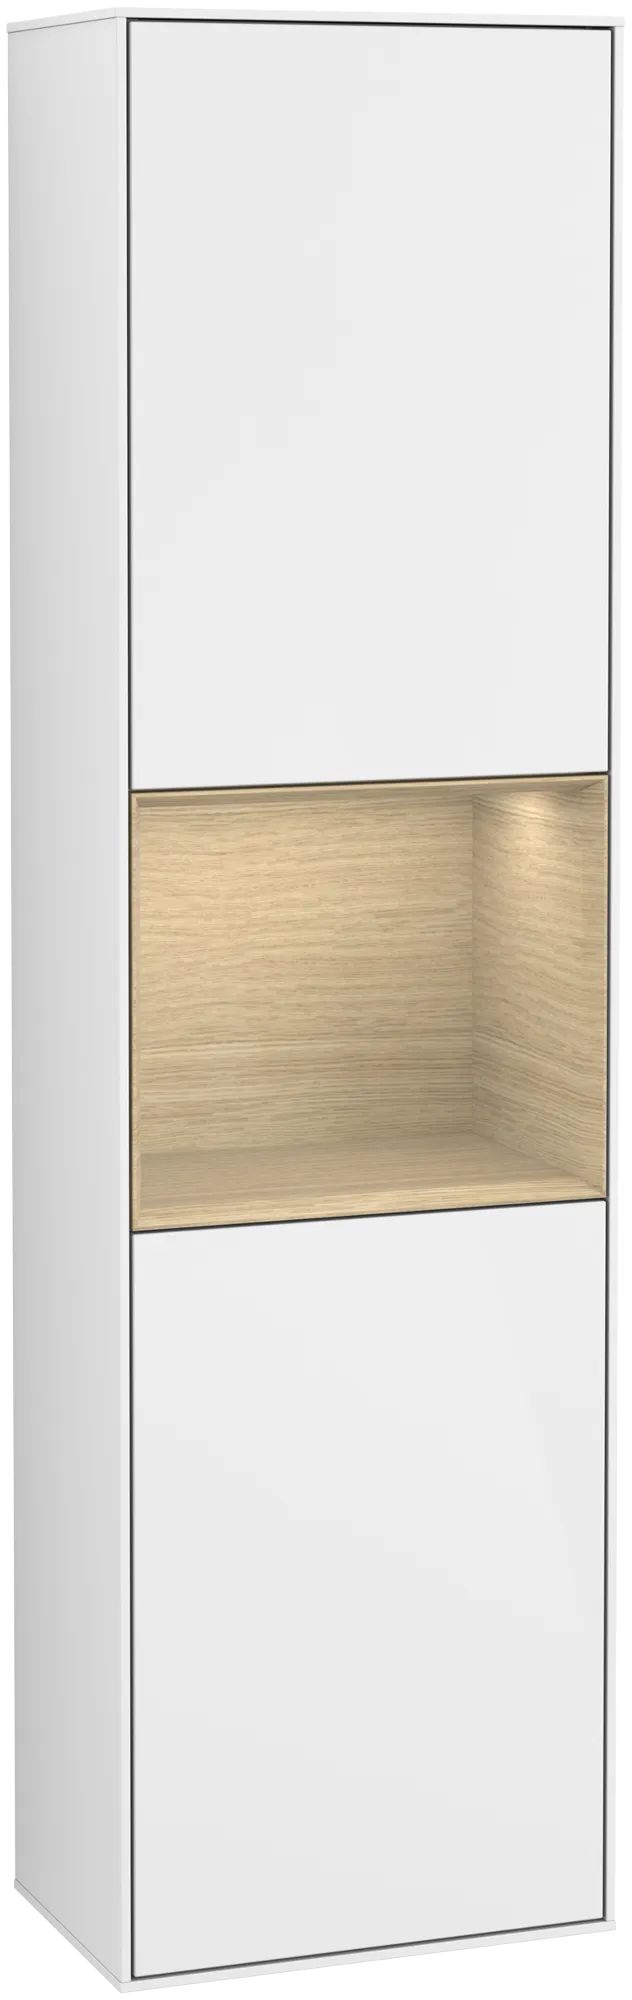 Bild von VILLEROY BOCH Finion Hochschrank, mit Beleuchtung, 2 Türen, 418 x 1516 x 270 mm, Glossy White Lacquer / Oak Veneer #G470PCGF